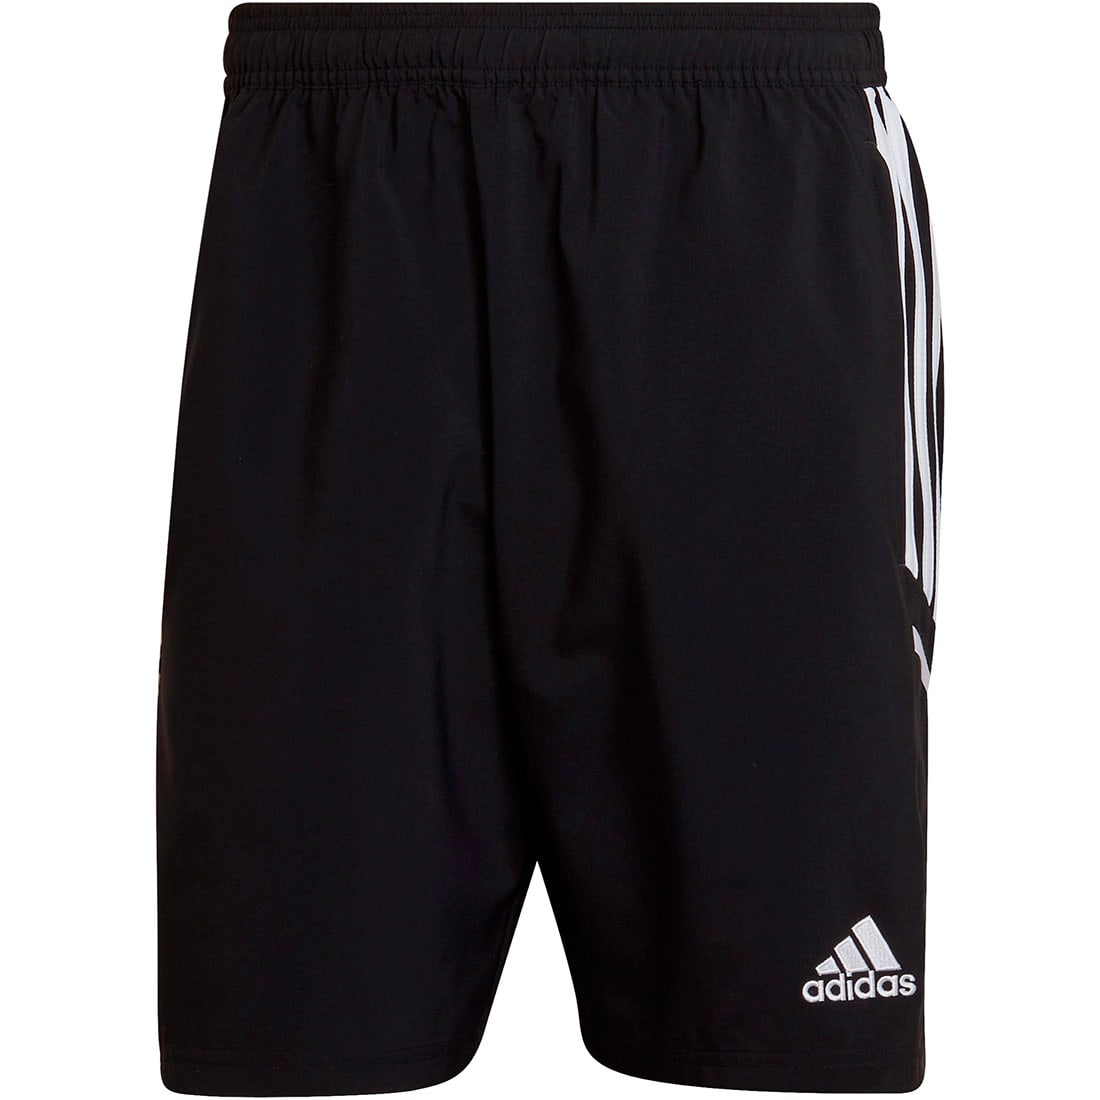 Adidas Herren Downtime Shorts Condivo 22 schwarz-weiß